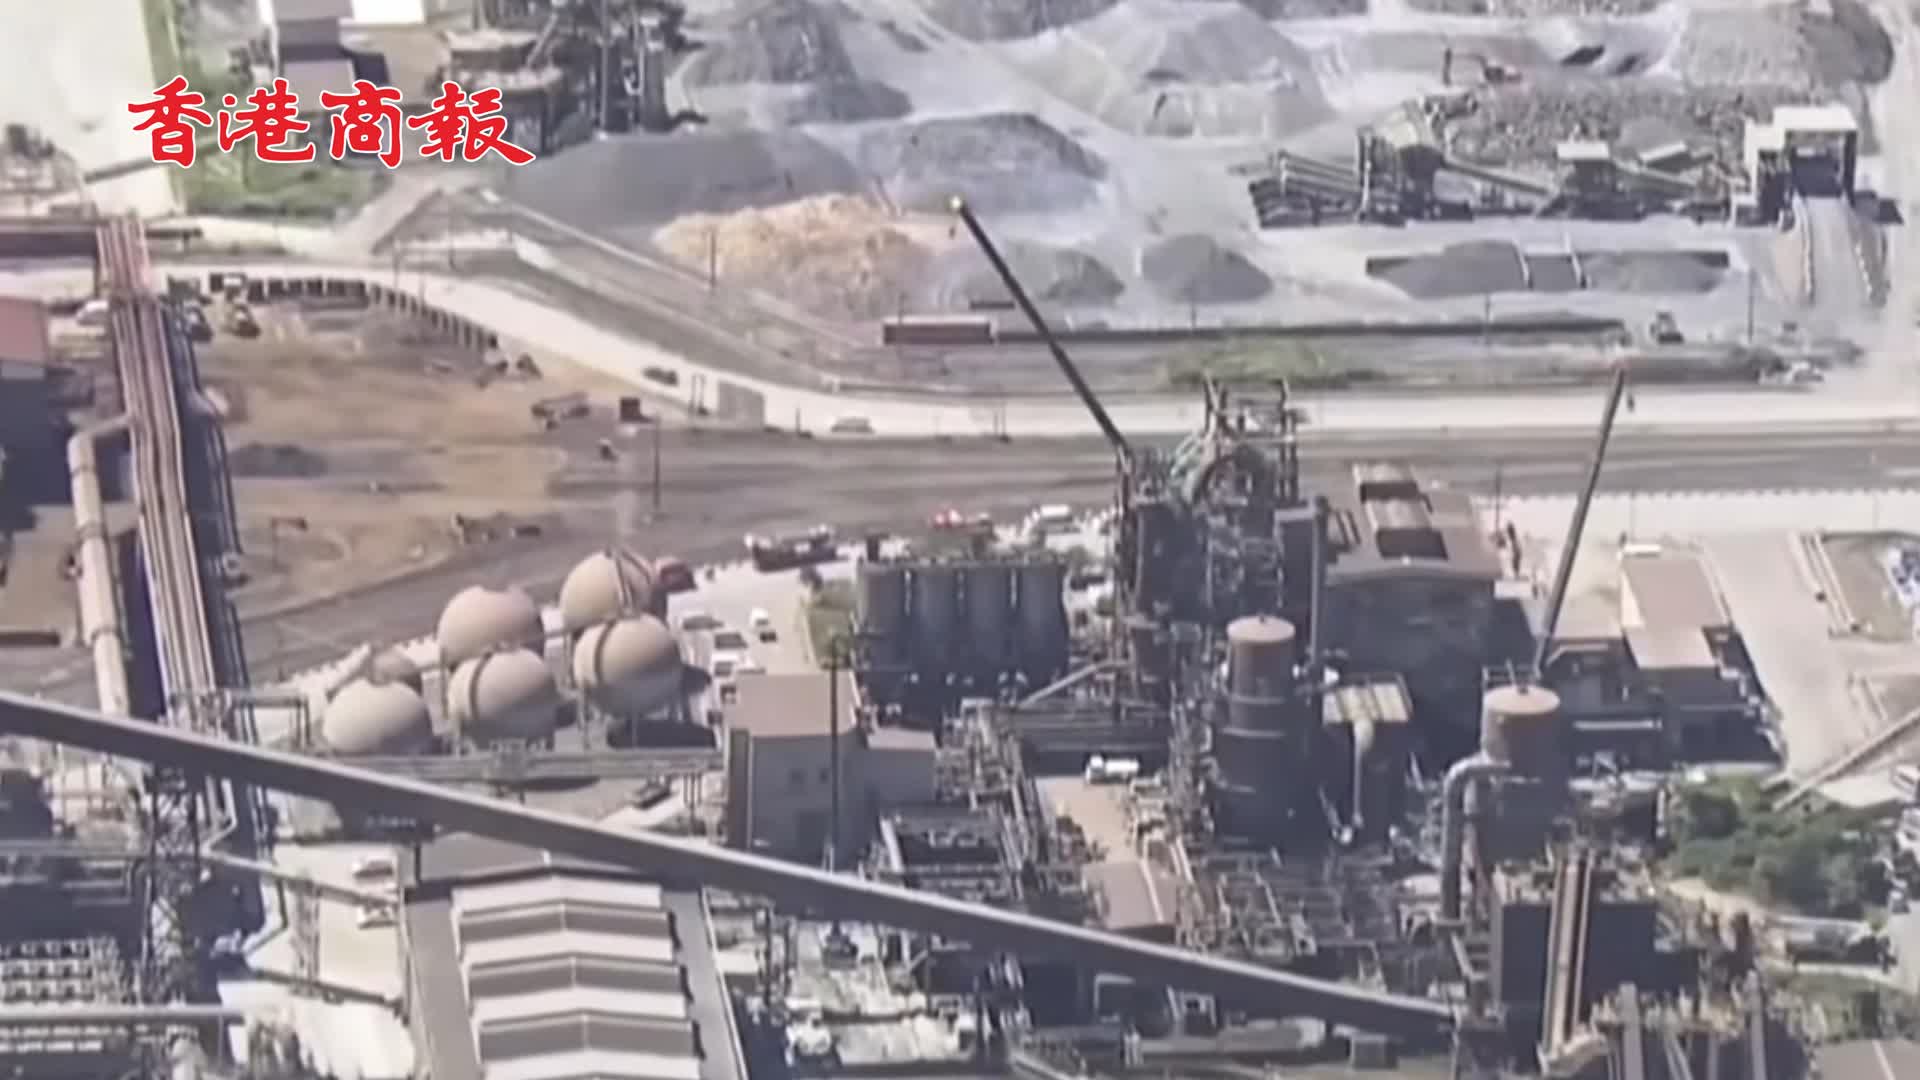 有片 | 容器意外傾覆 日本千葉製鐵廠約100噸鐵水洩漏